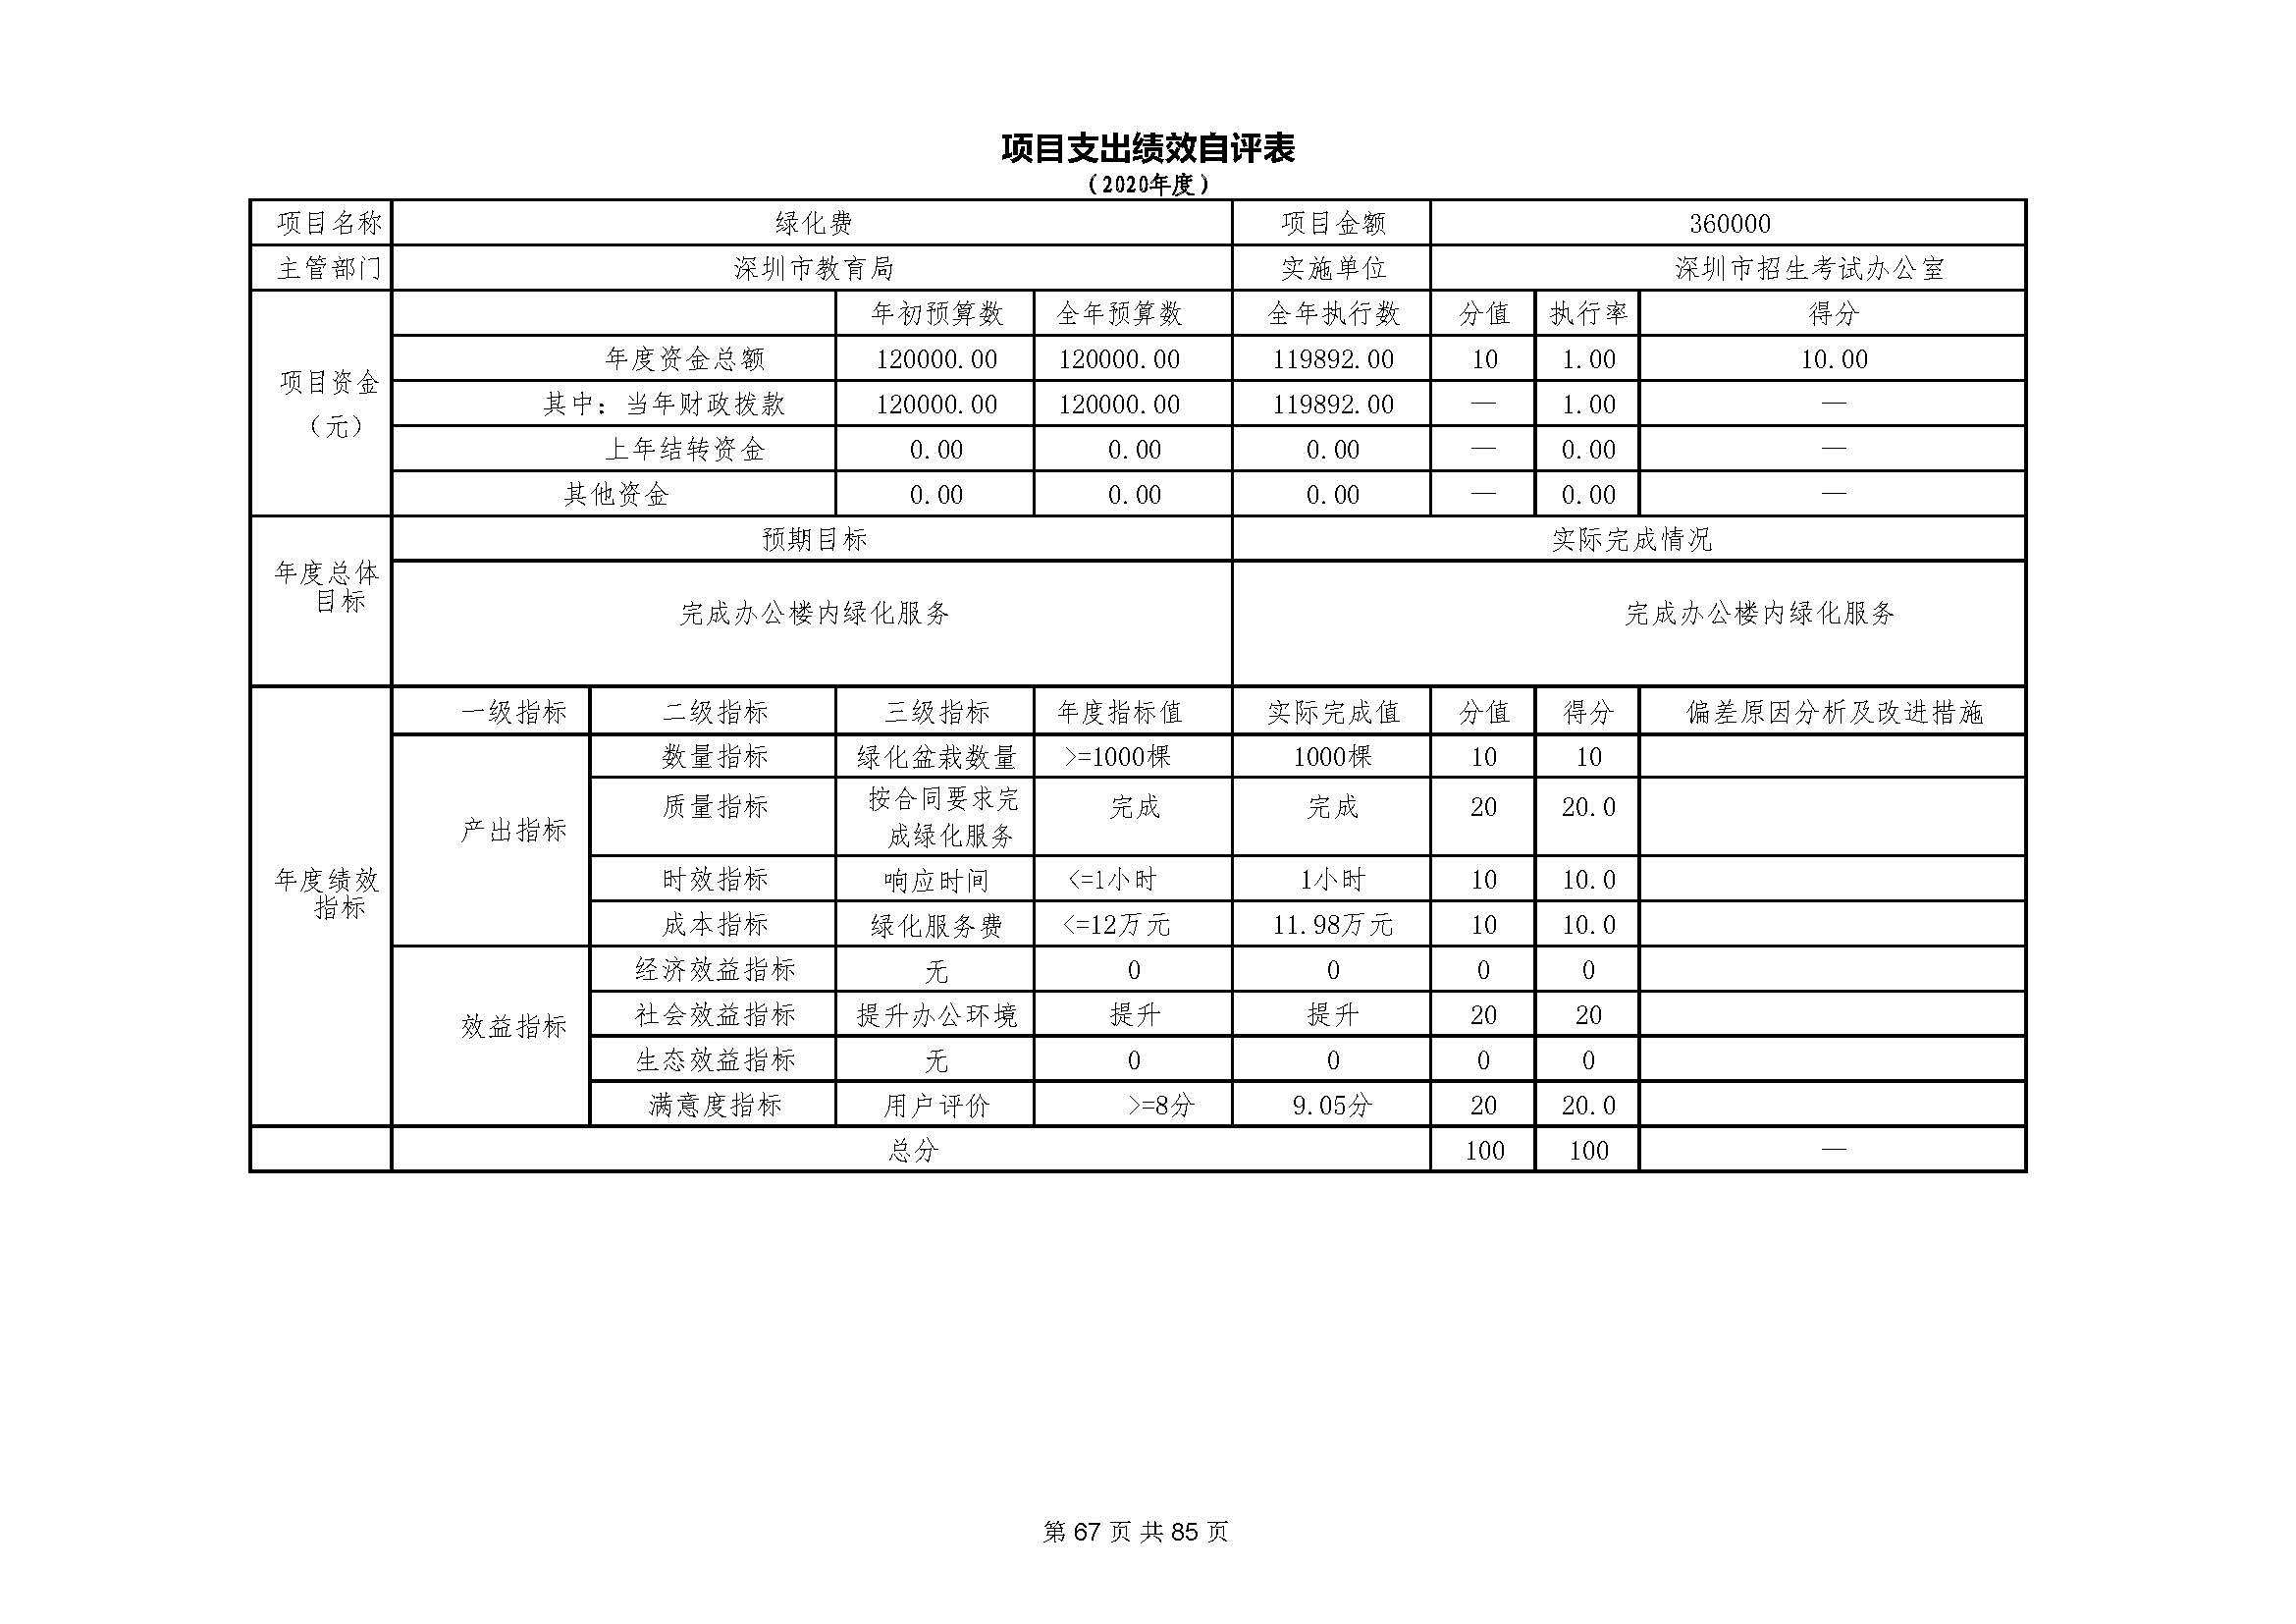 深圳市招生考试办公室2020年度部门决算_页面_68.jpg